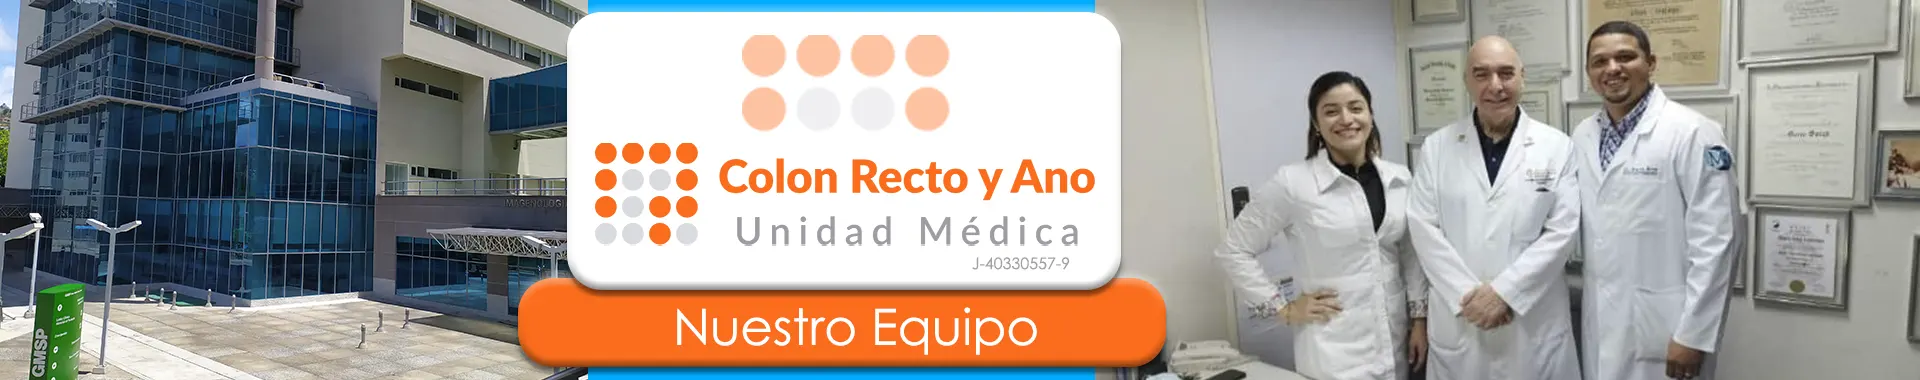 Imagen 2 del perfil de Colon Recto y Ano Unidad Médica